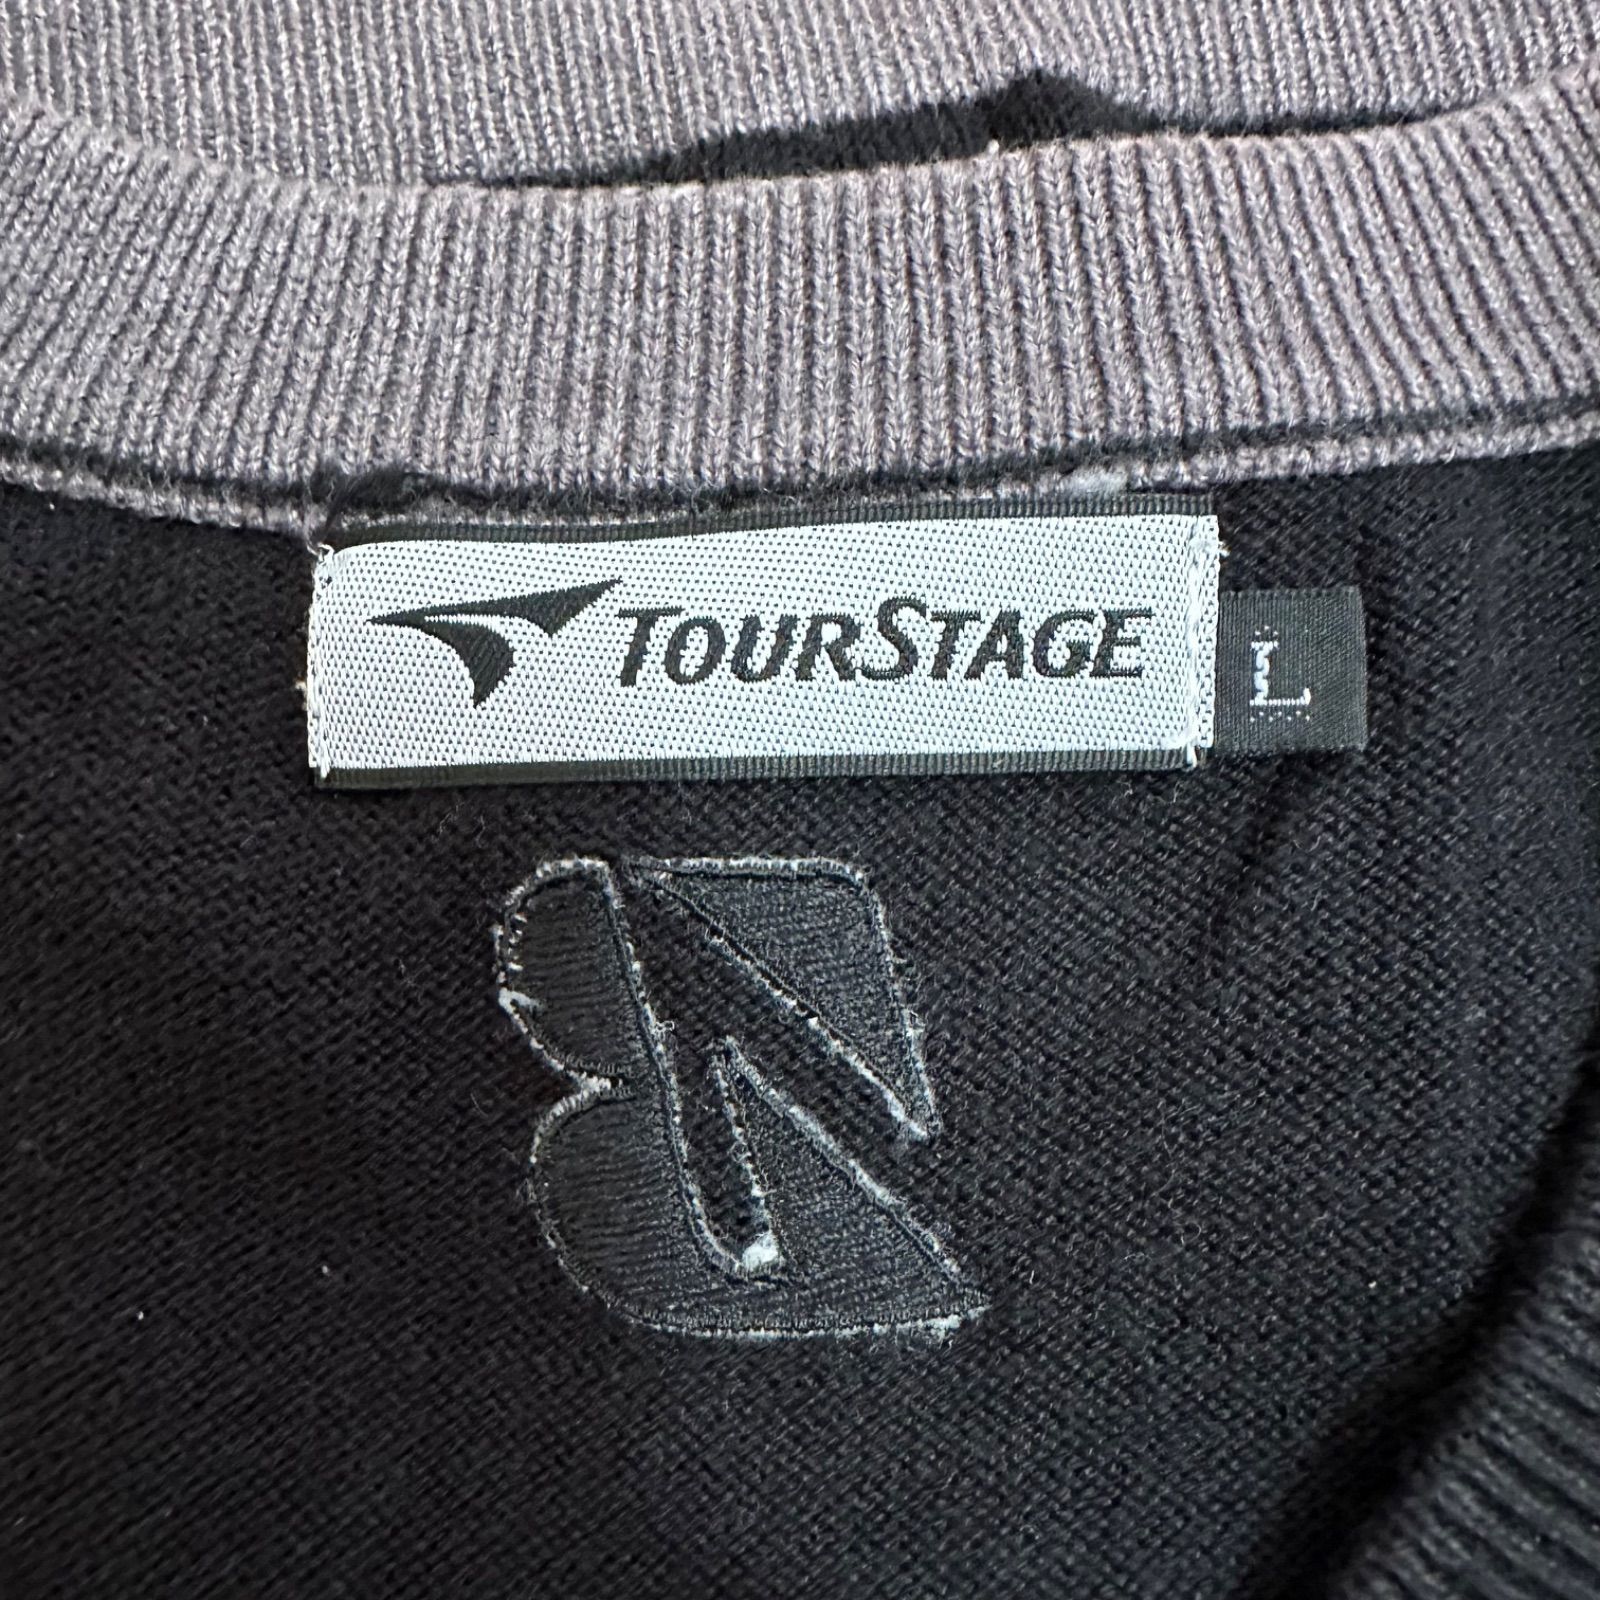 z590 TOUR STAGEツアーステージブリヂストン ニットベストゴルフウェア ブラック メンズ Lサイズ